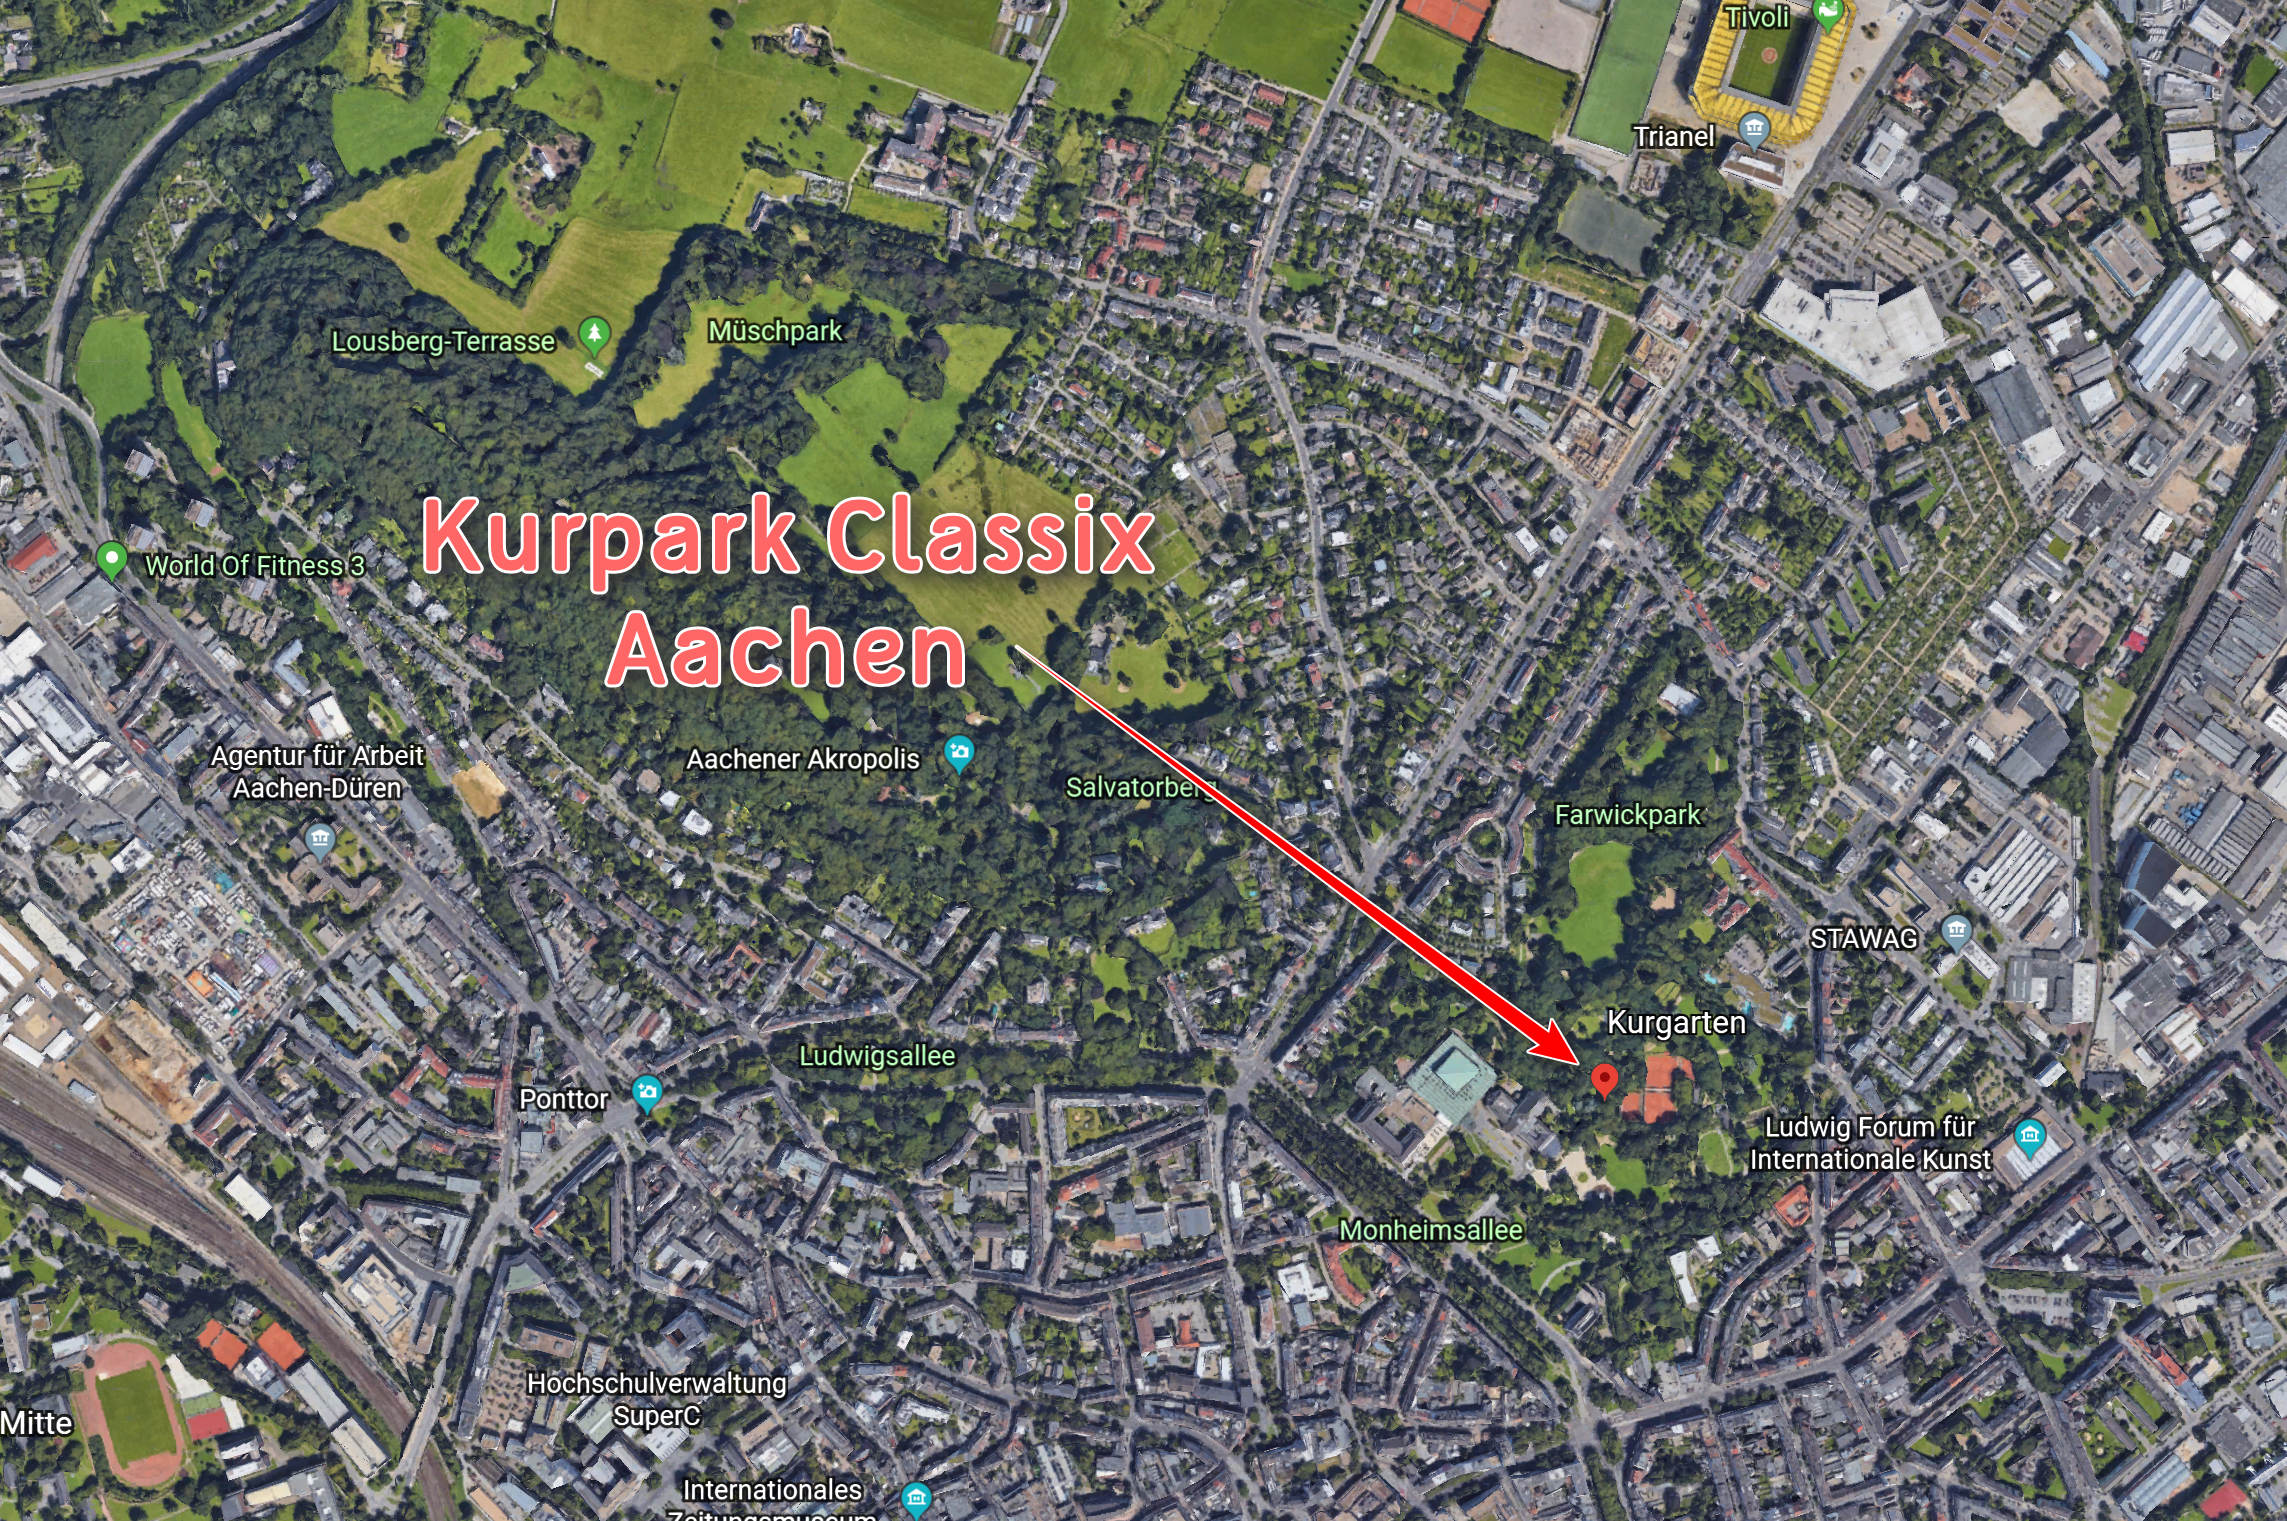 Aachen aerial shot